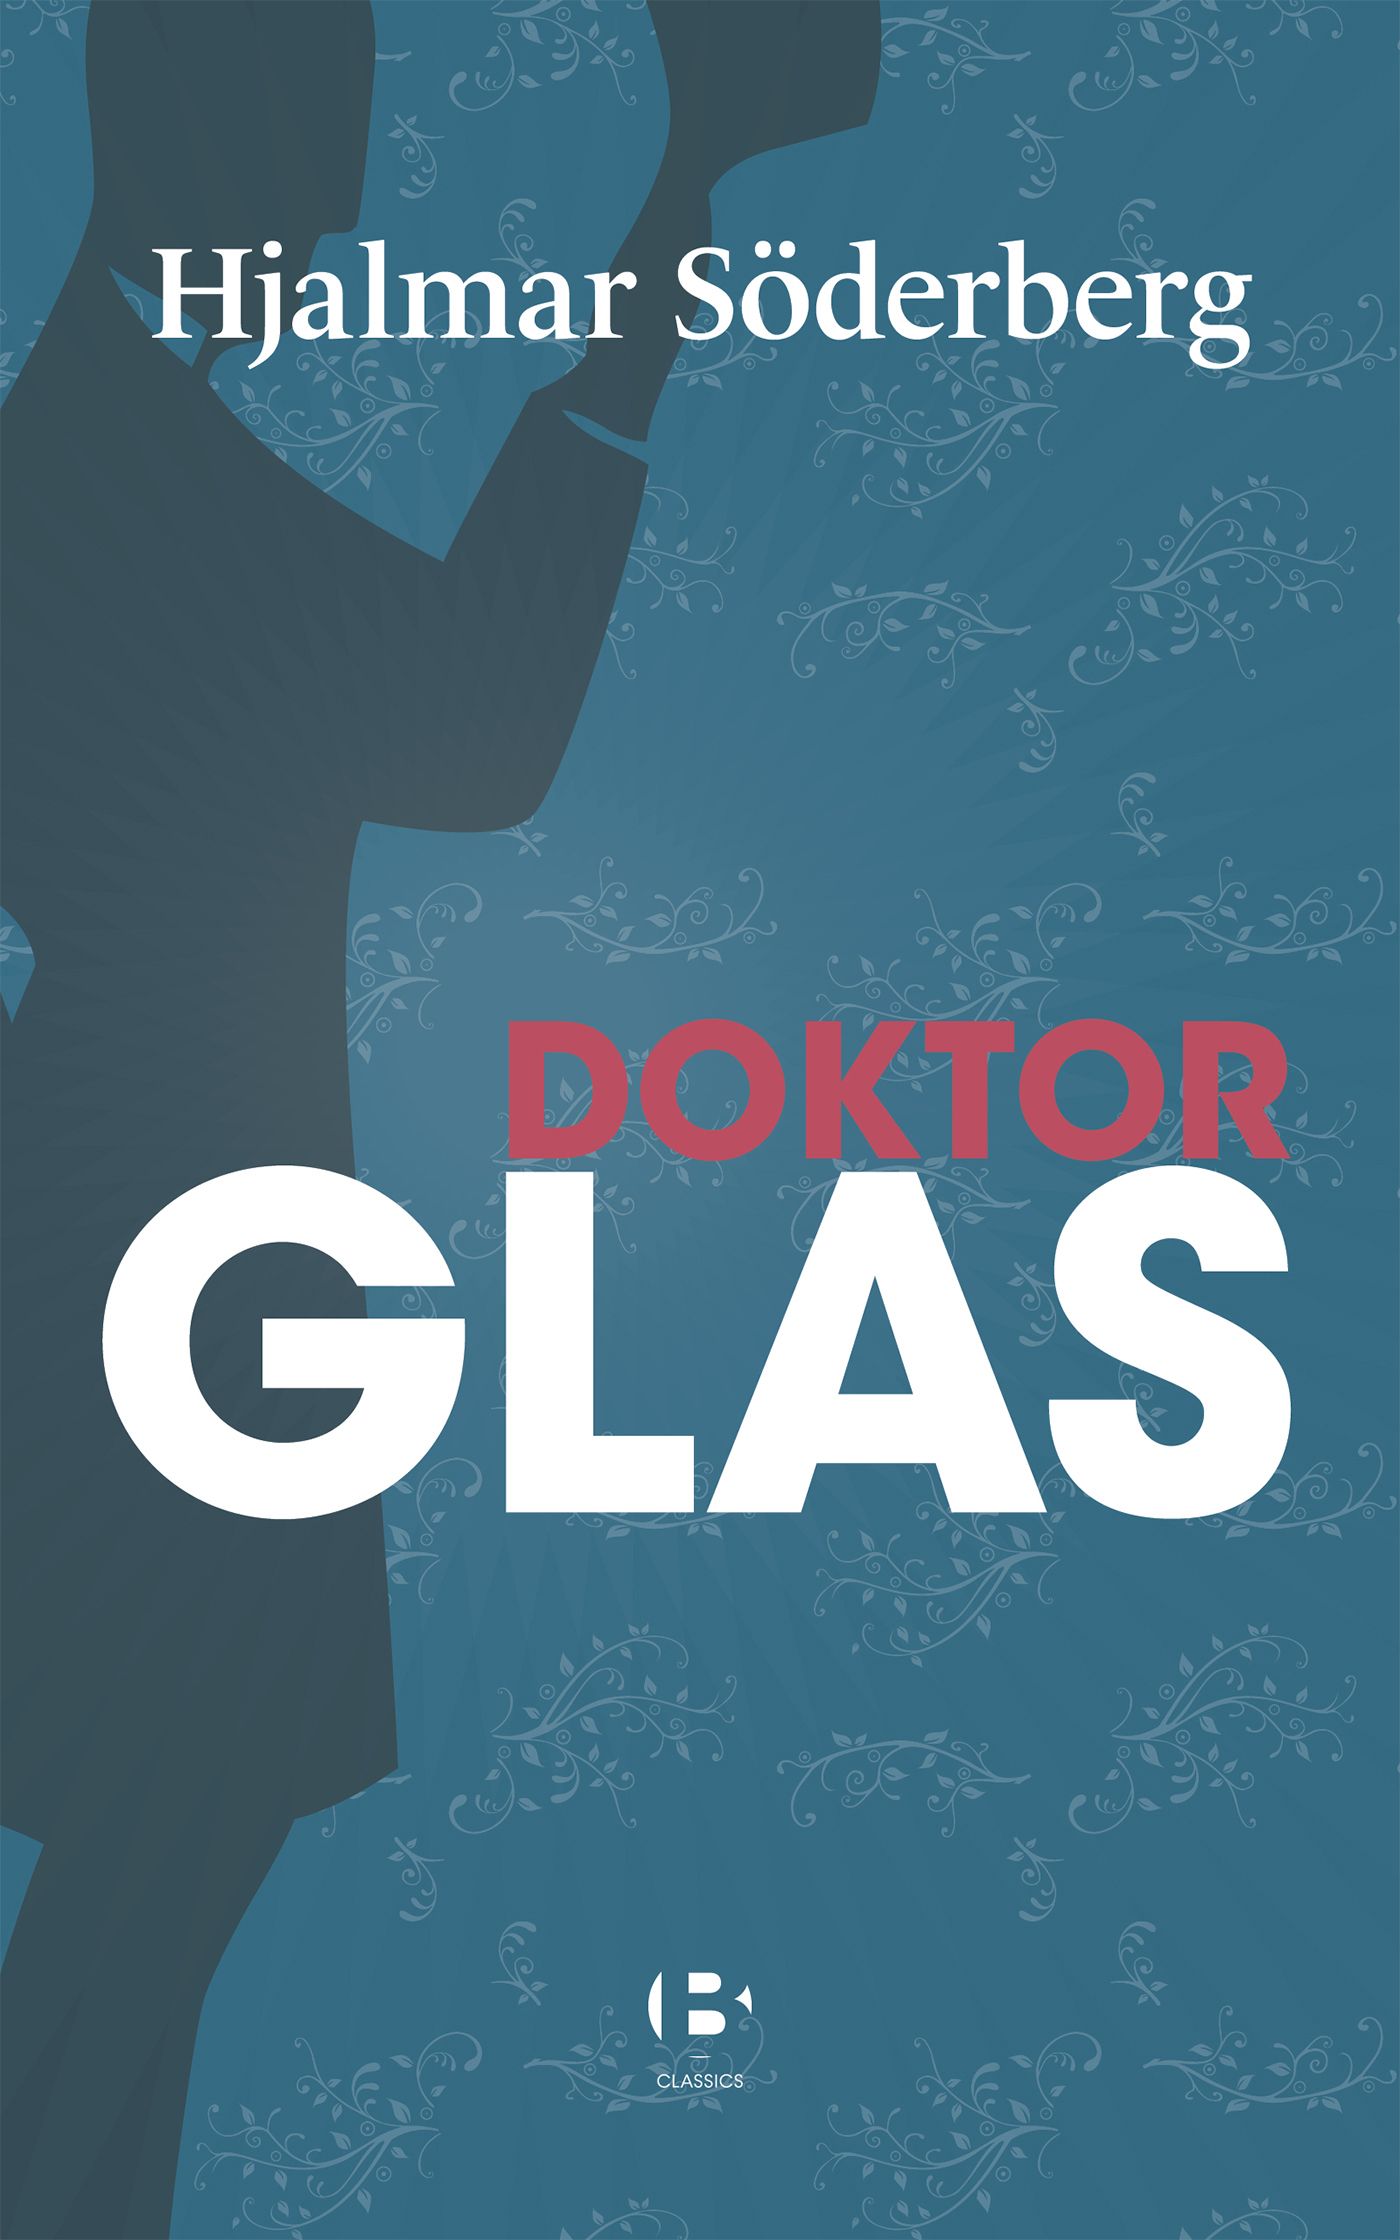 Doktor Glas, e-bok av Hjalmar Söderberg